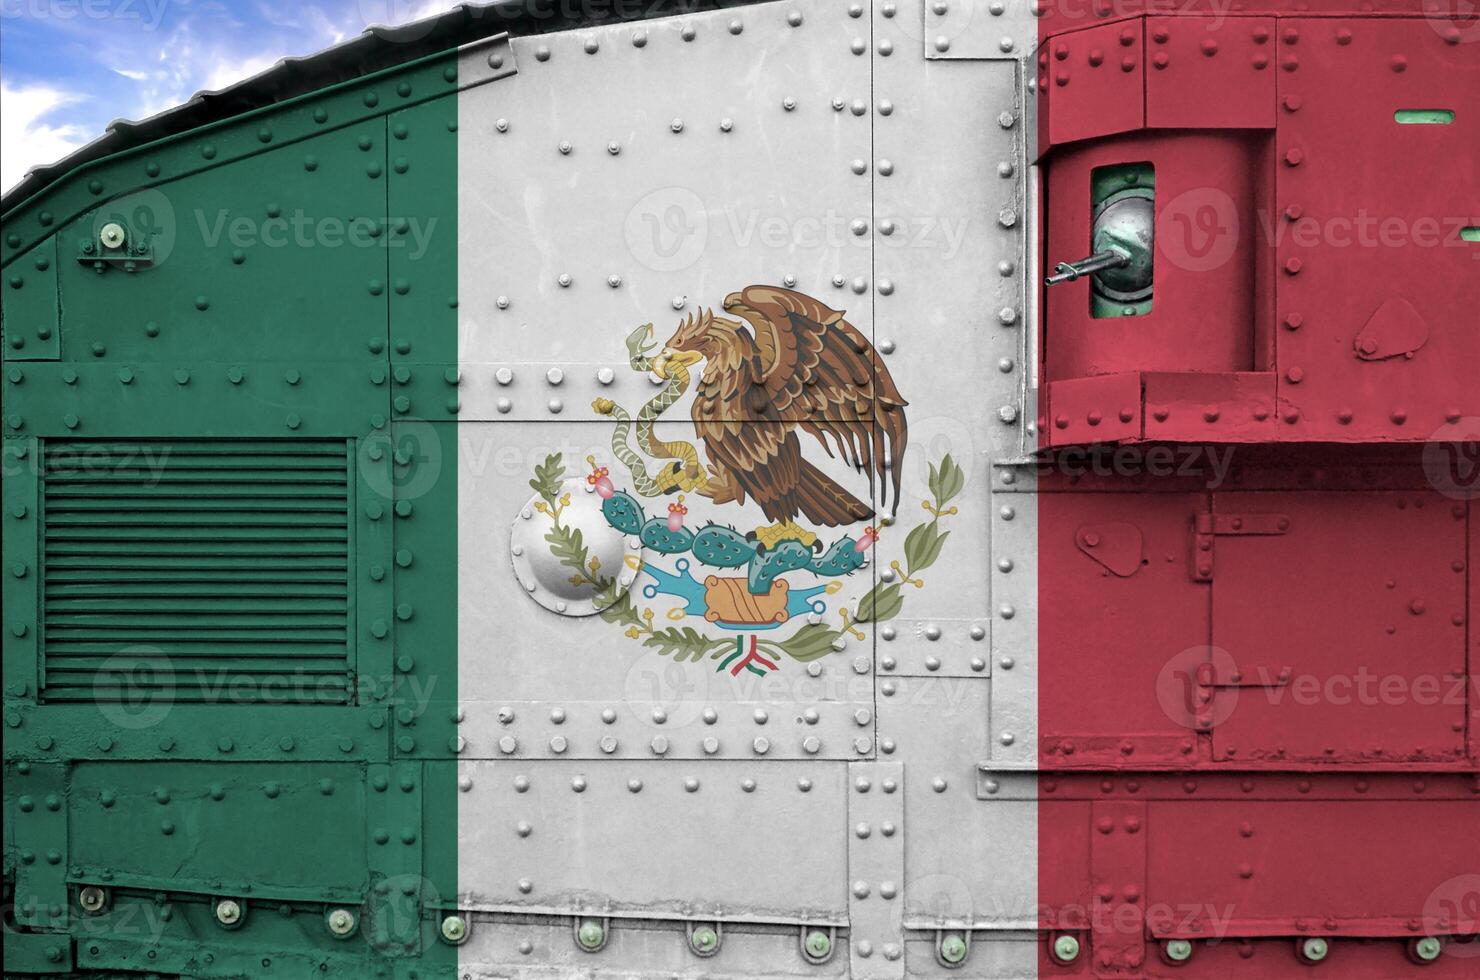 mexico flagga avbildad på sida del av militär armerad tank närbild. armén krafter konceptuell bakgrund foto